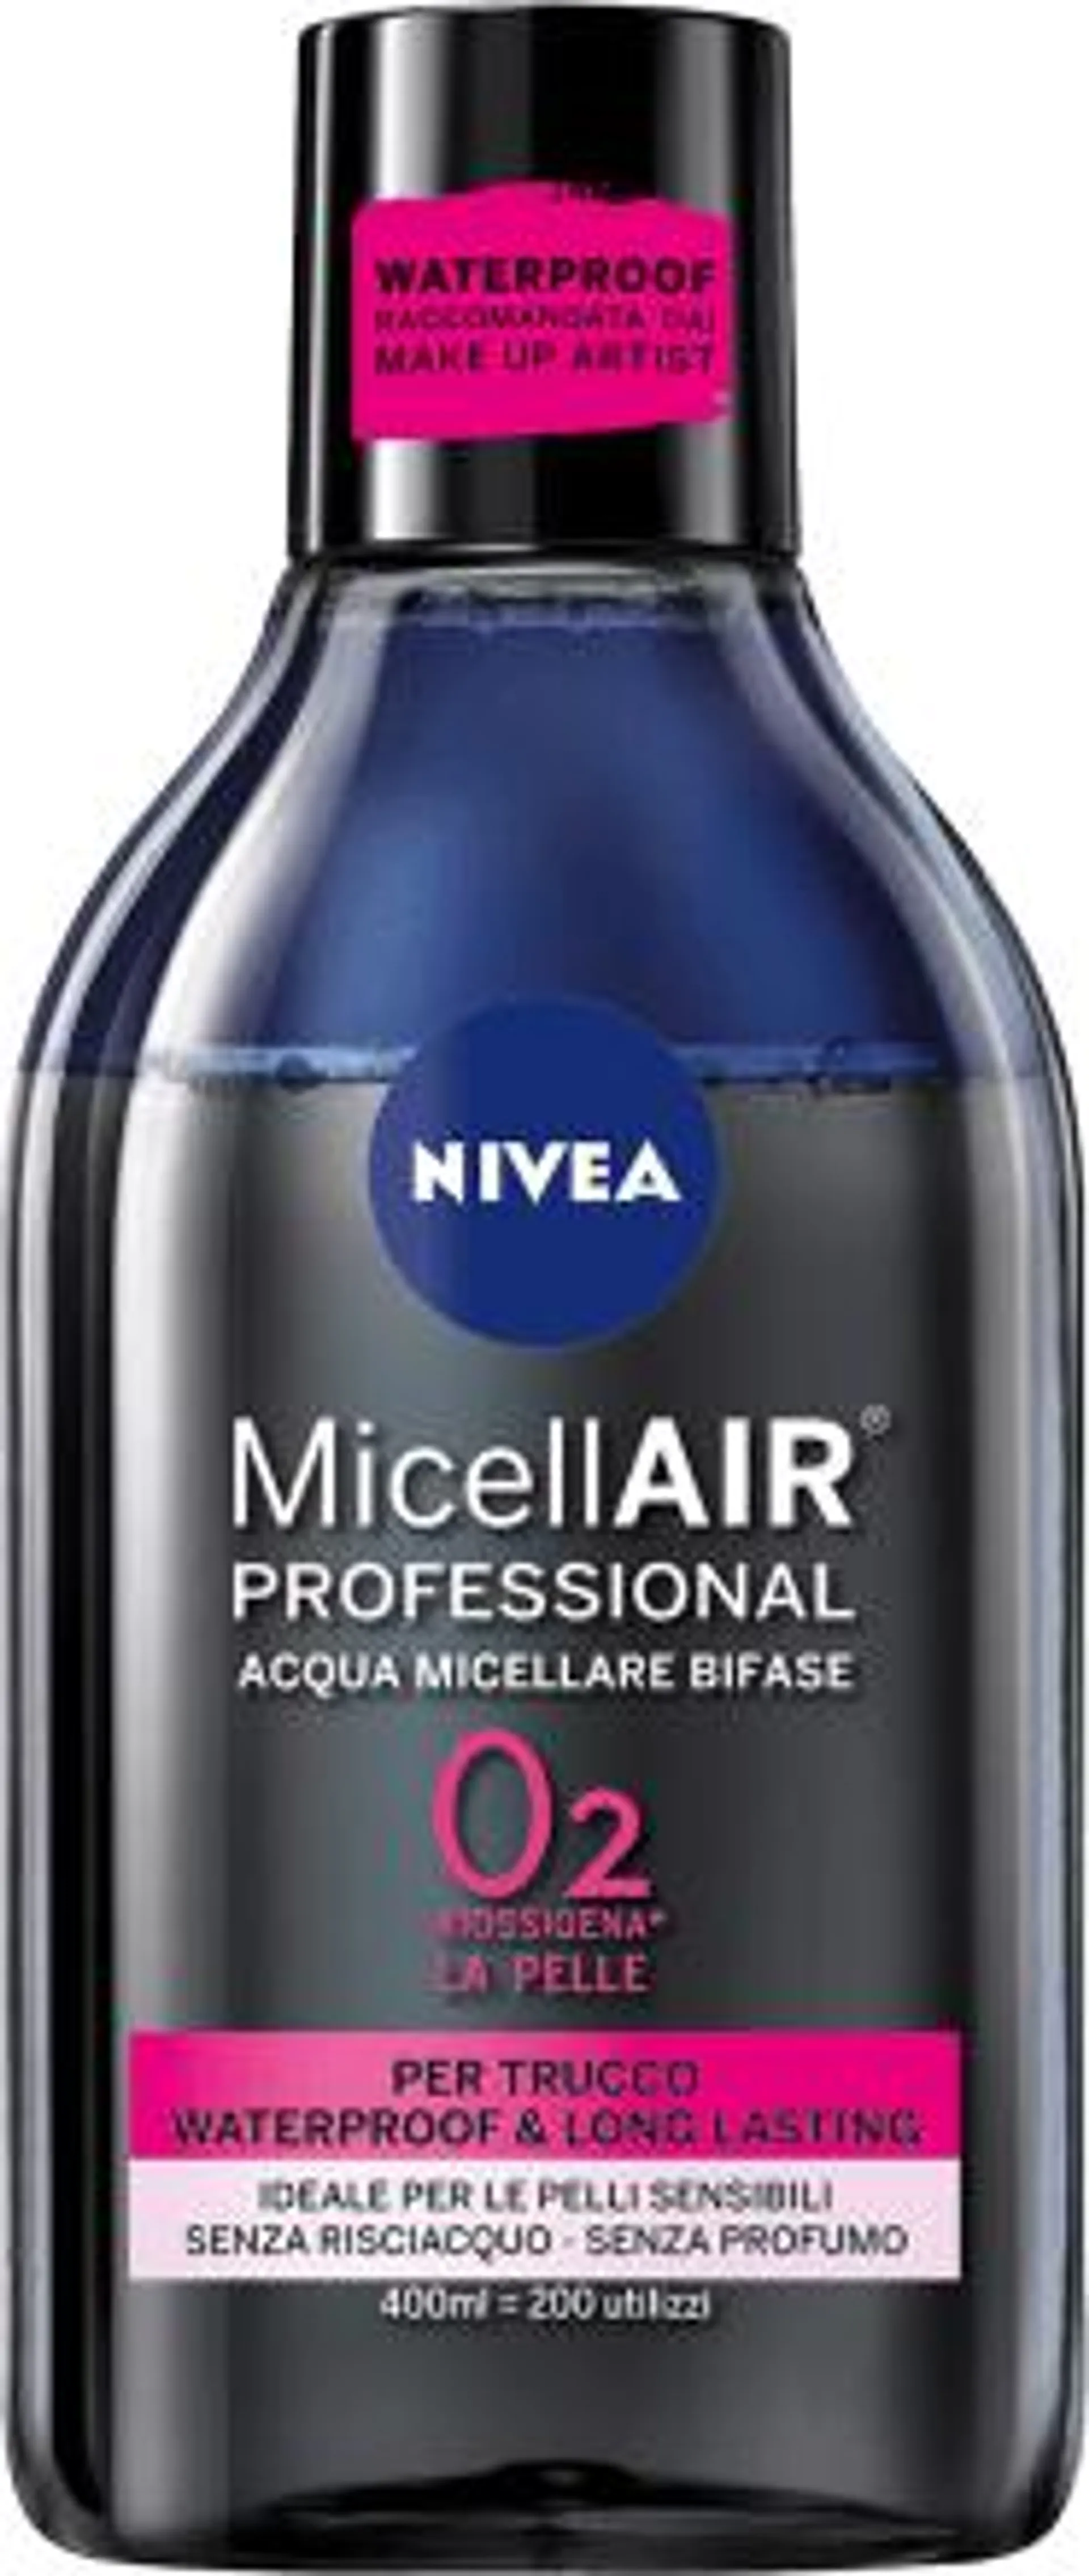 Acqua micellare bifase MicellAIR® Professional 400 ml